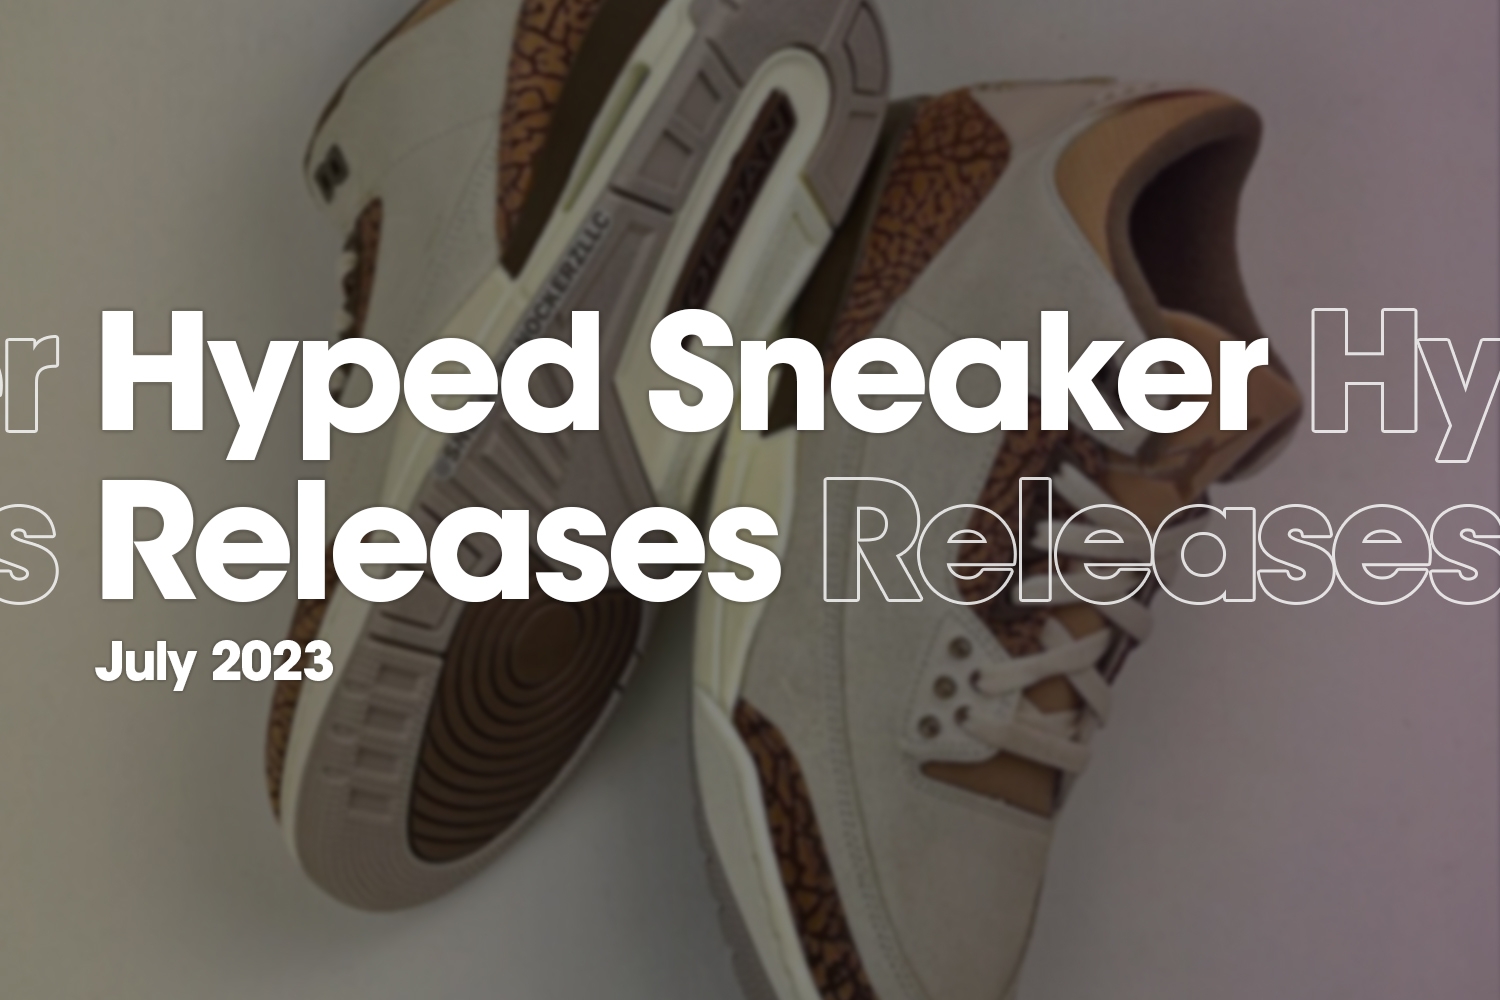 Hyped Sneaker Releases van juli 2023